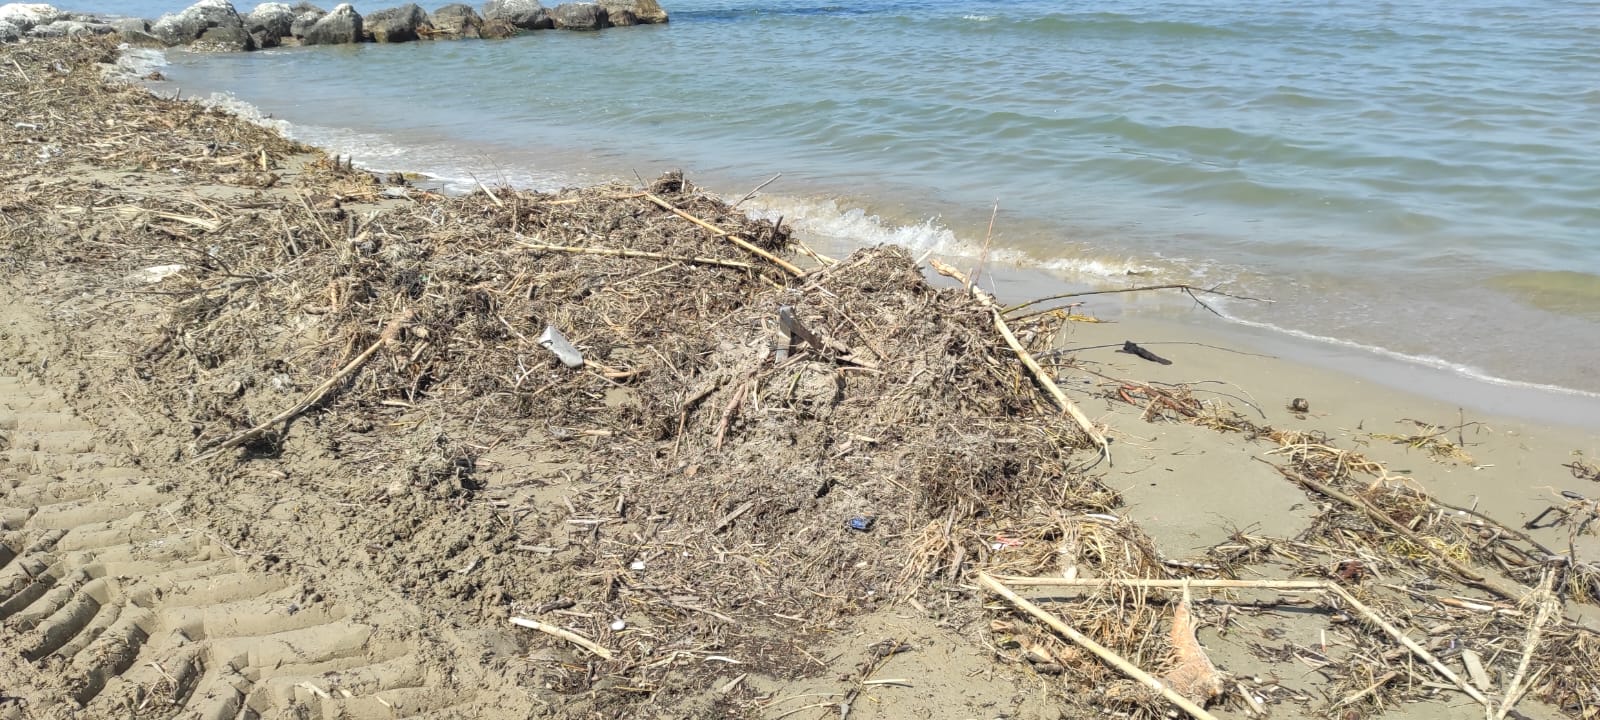 Spiaggia sporca e maleodorante dopo la pulizia a Cologna: la denuncia FOTO